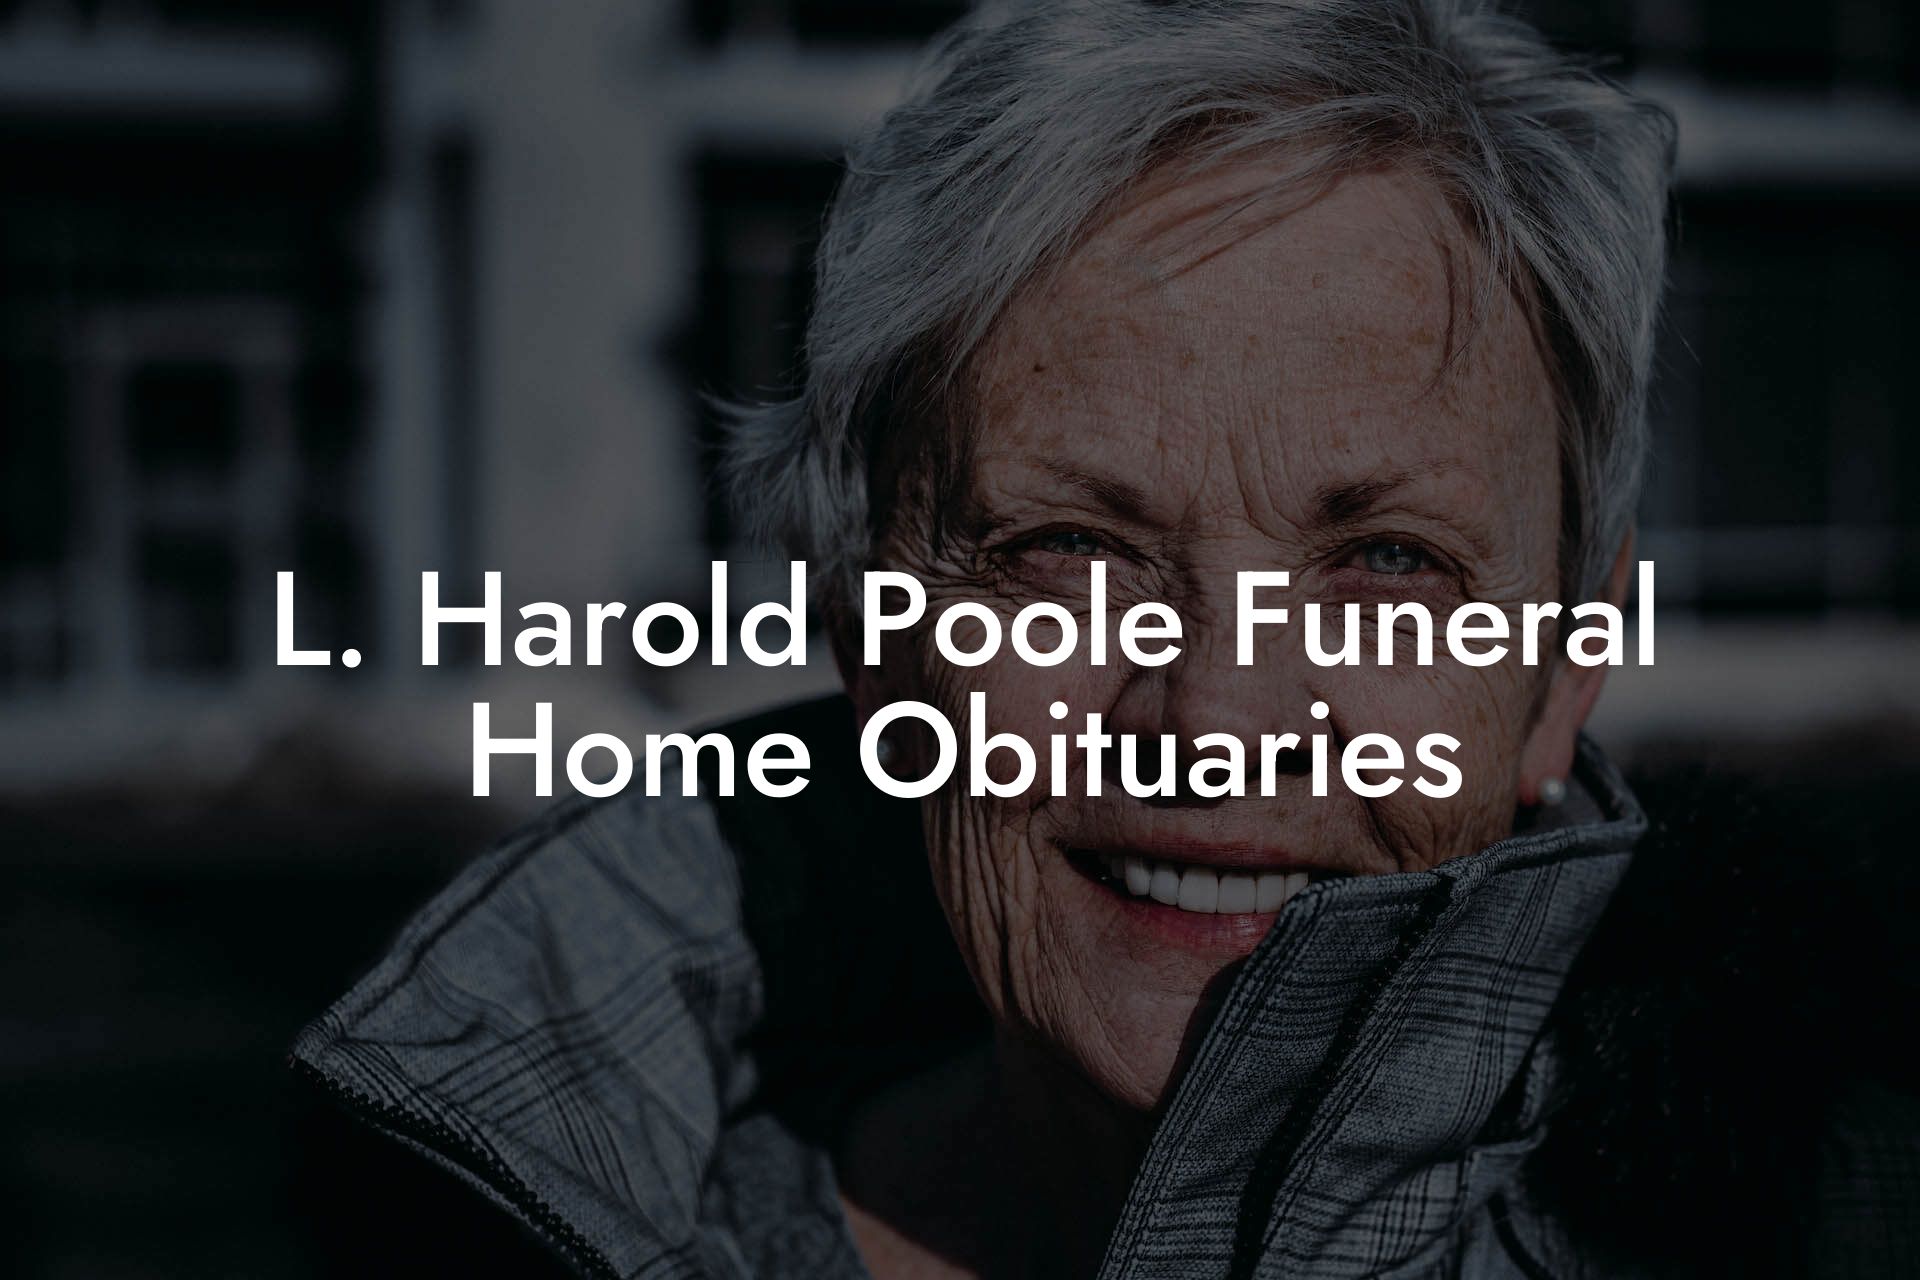 L. Harold Poole Funeral Home Obituaries